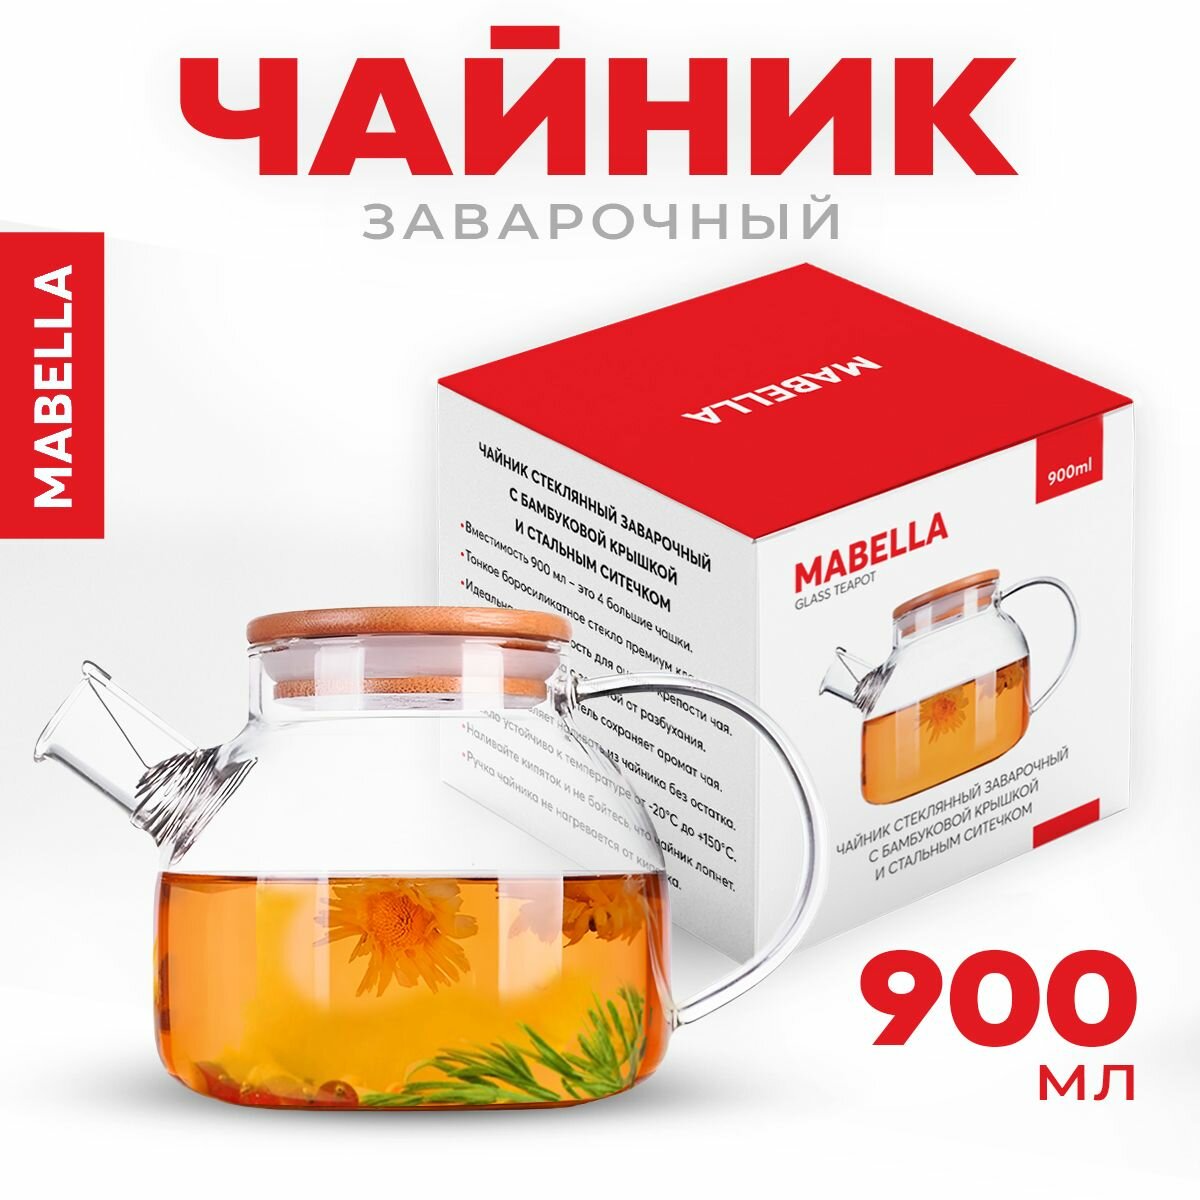 Mabella, Чайник заварочный стеклянный "Бочонок 900 мл", заварной чайник стеклянный с ситечком, заварник для чая